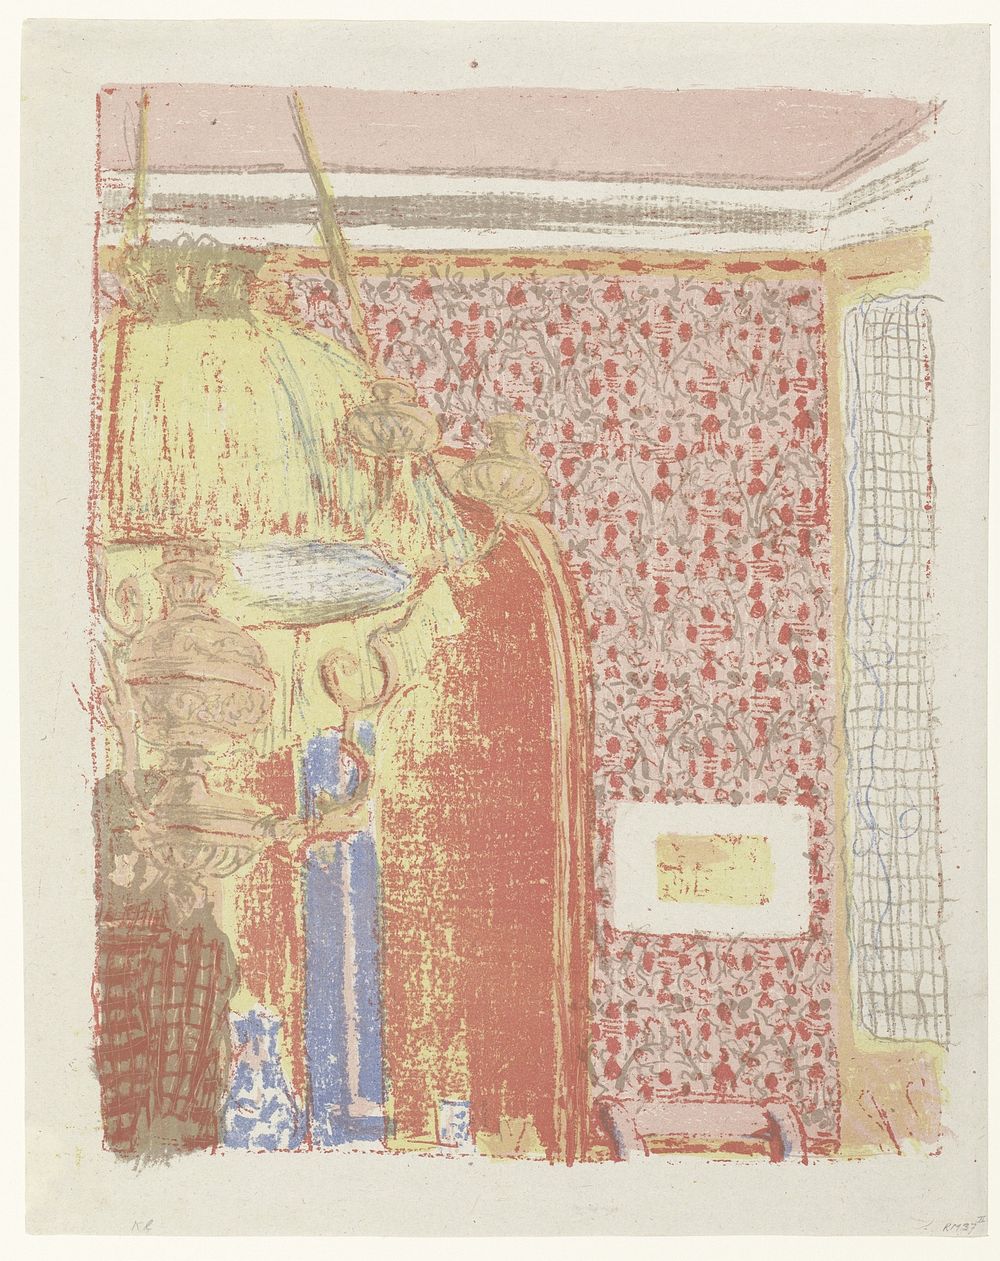 Interieur met roze behang en lamp (1899) by Édouard Vuillard and Henri Louis Ambroise Vollard